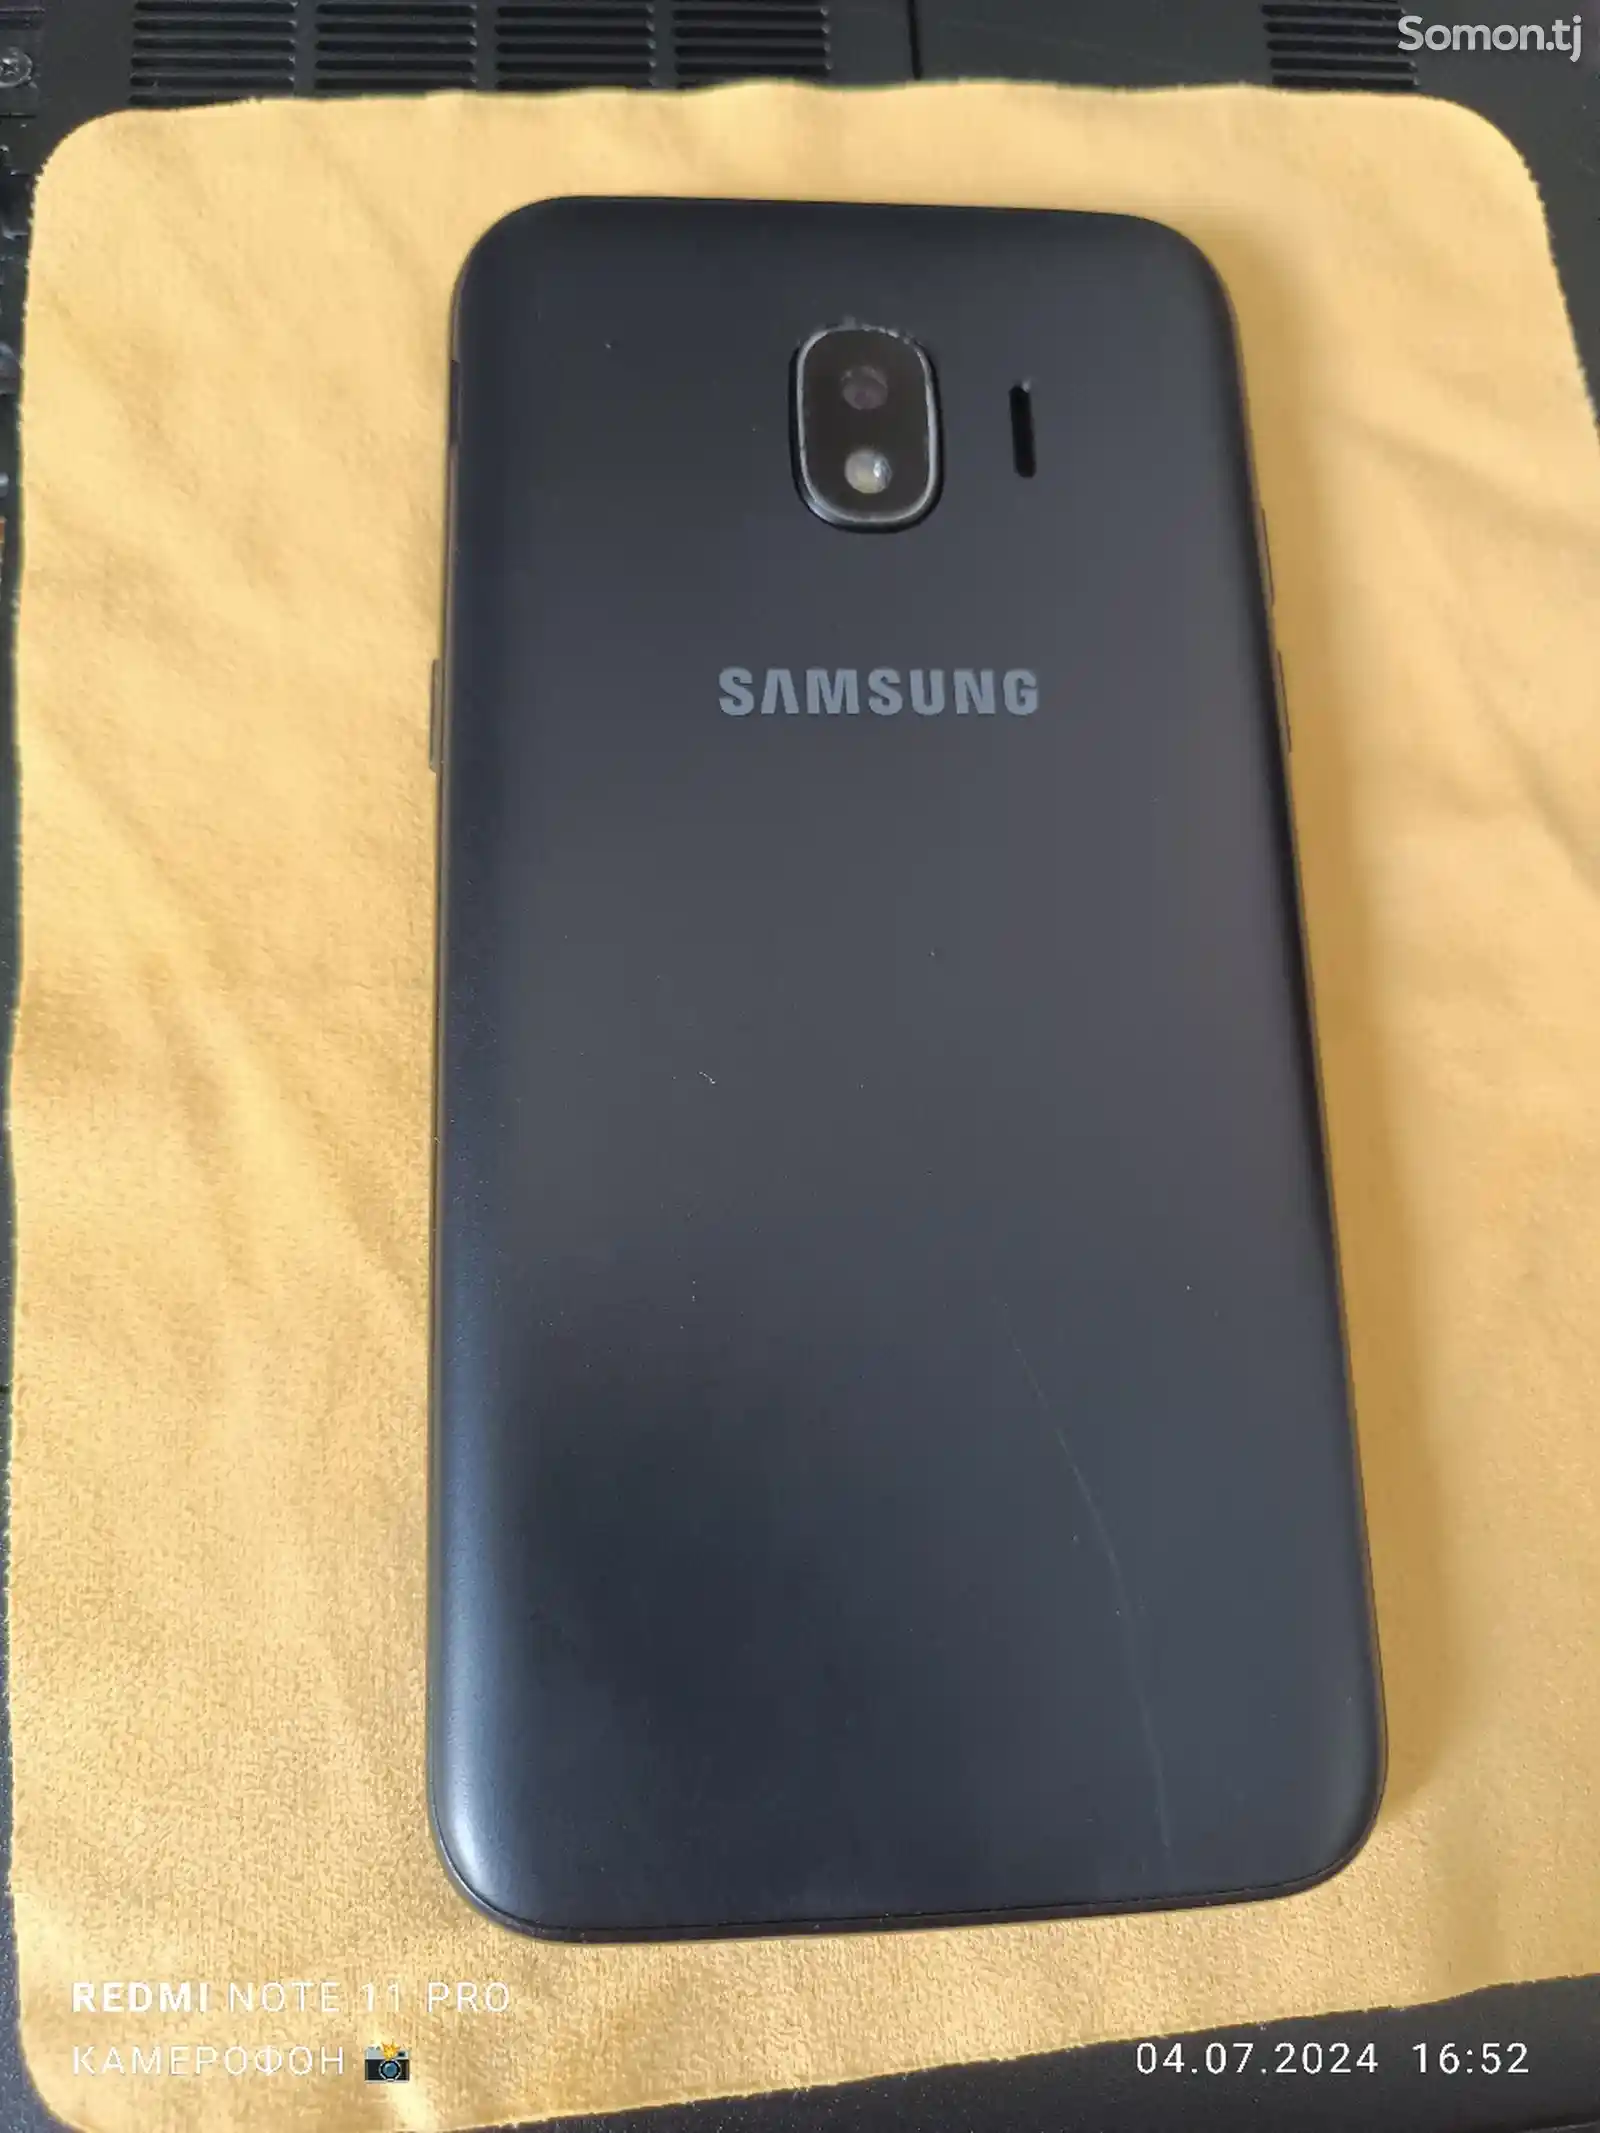 Samsung Galaxy Grand prime pro 16gb-8